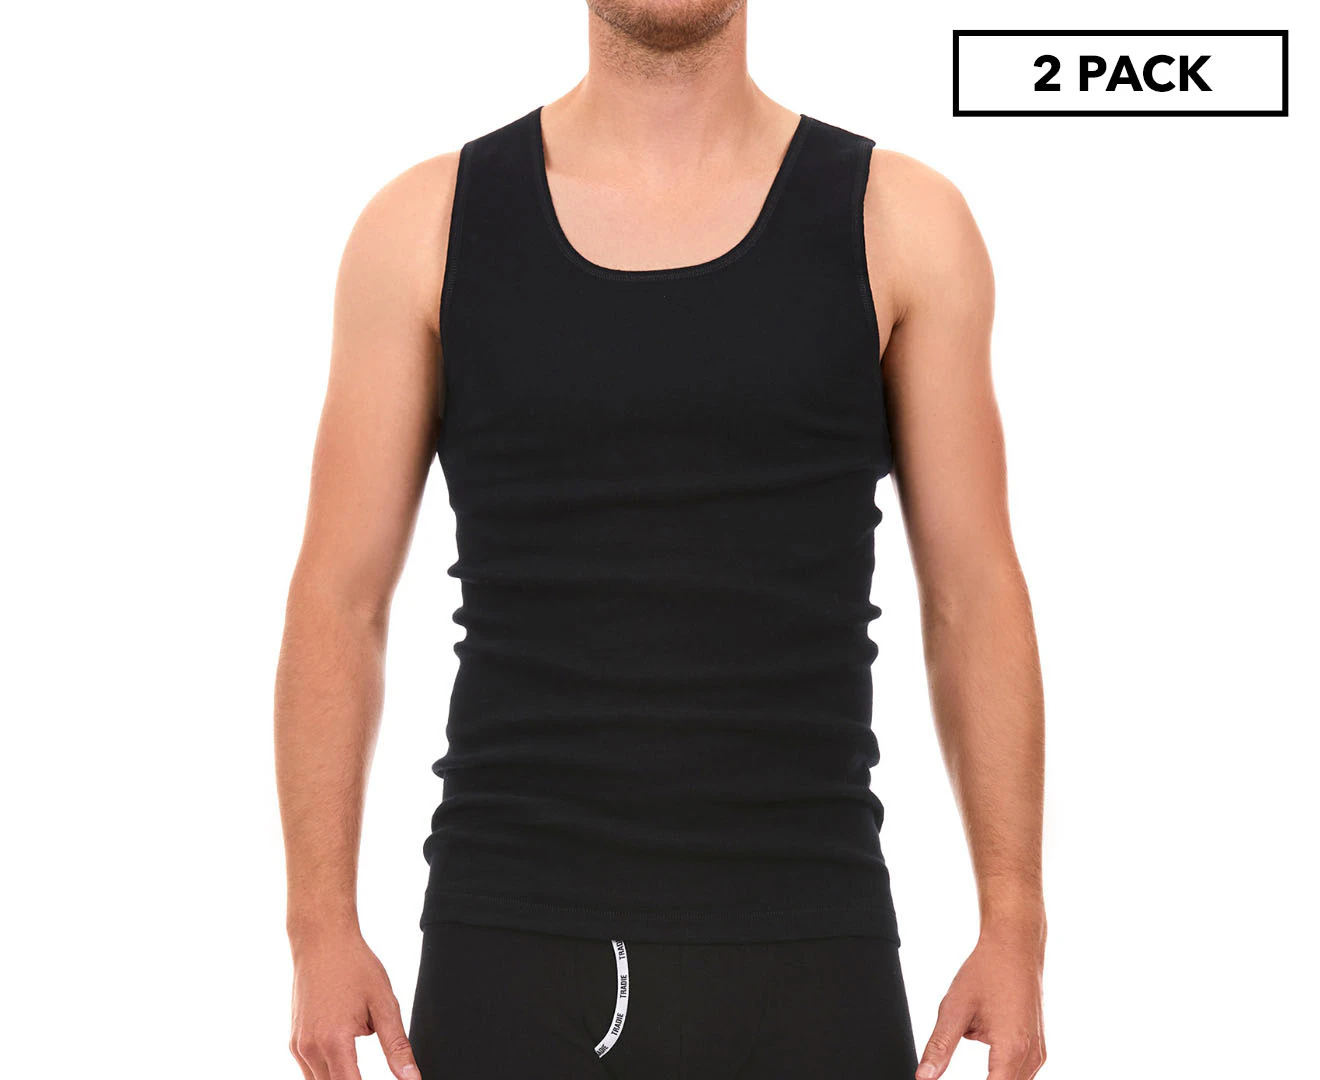 Ladies 6 Pack Size 18-26 Tradie Cotton Underwear Briefs Black Focus (SB3) -  Mixed